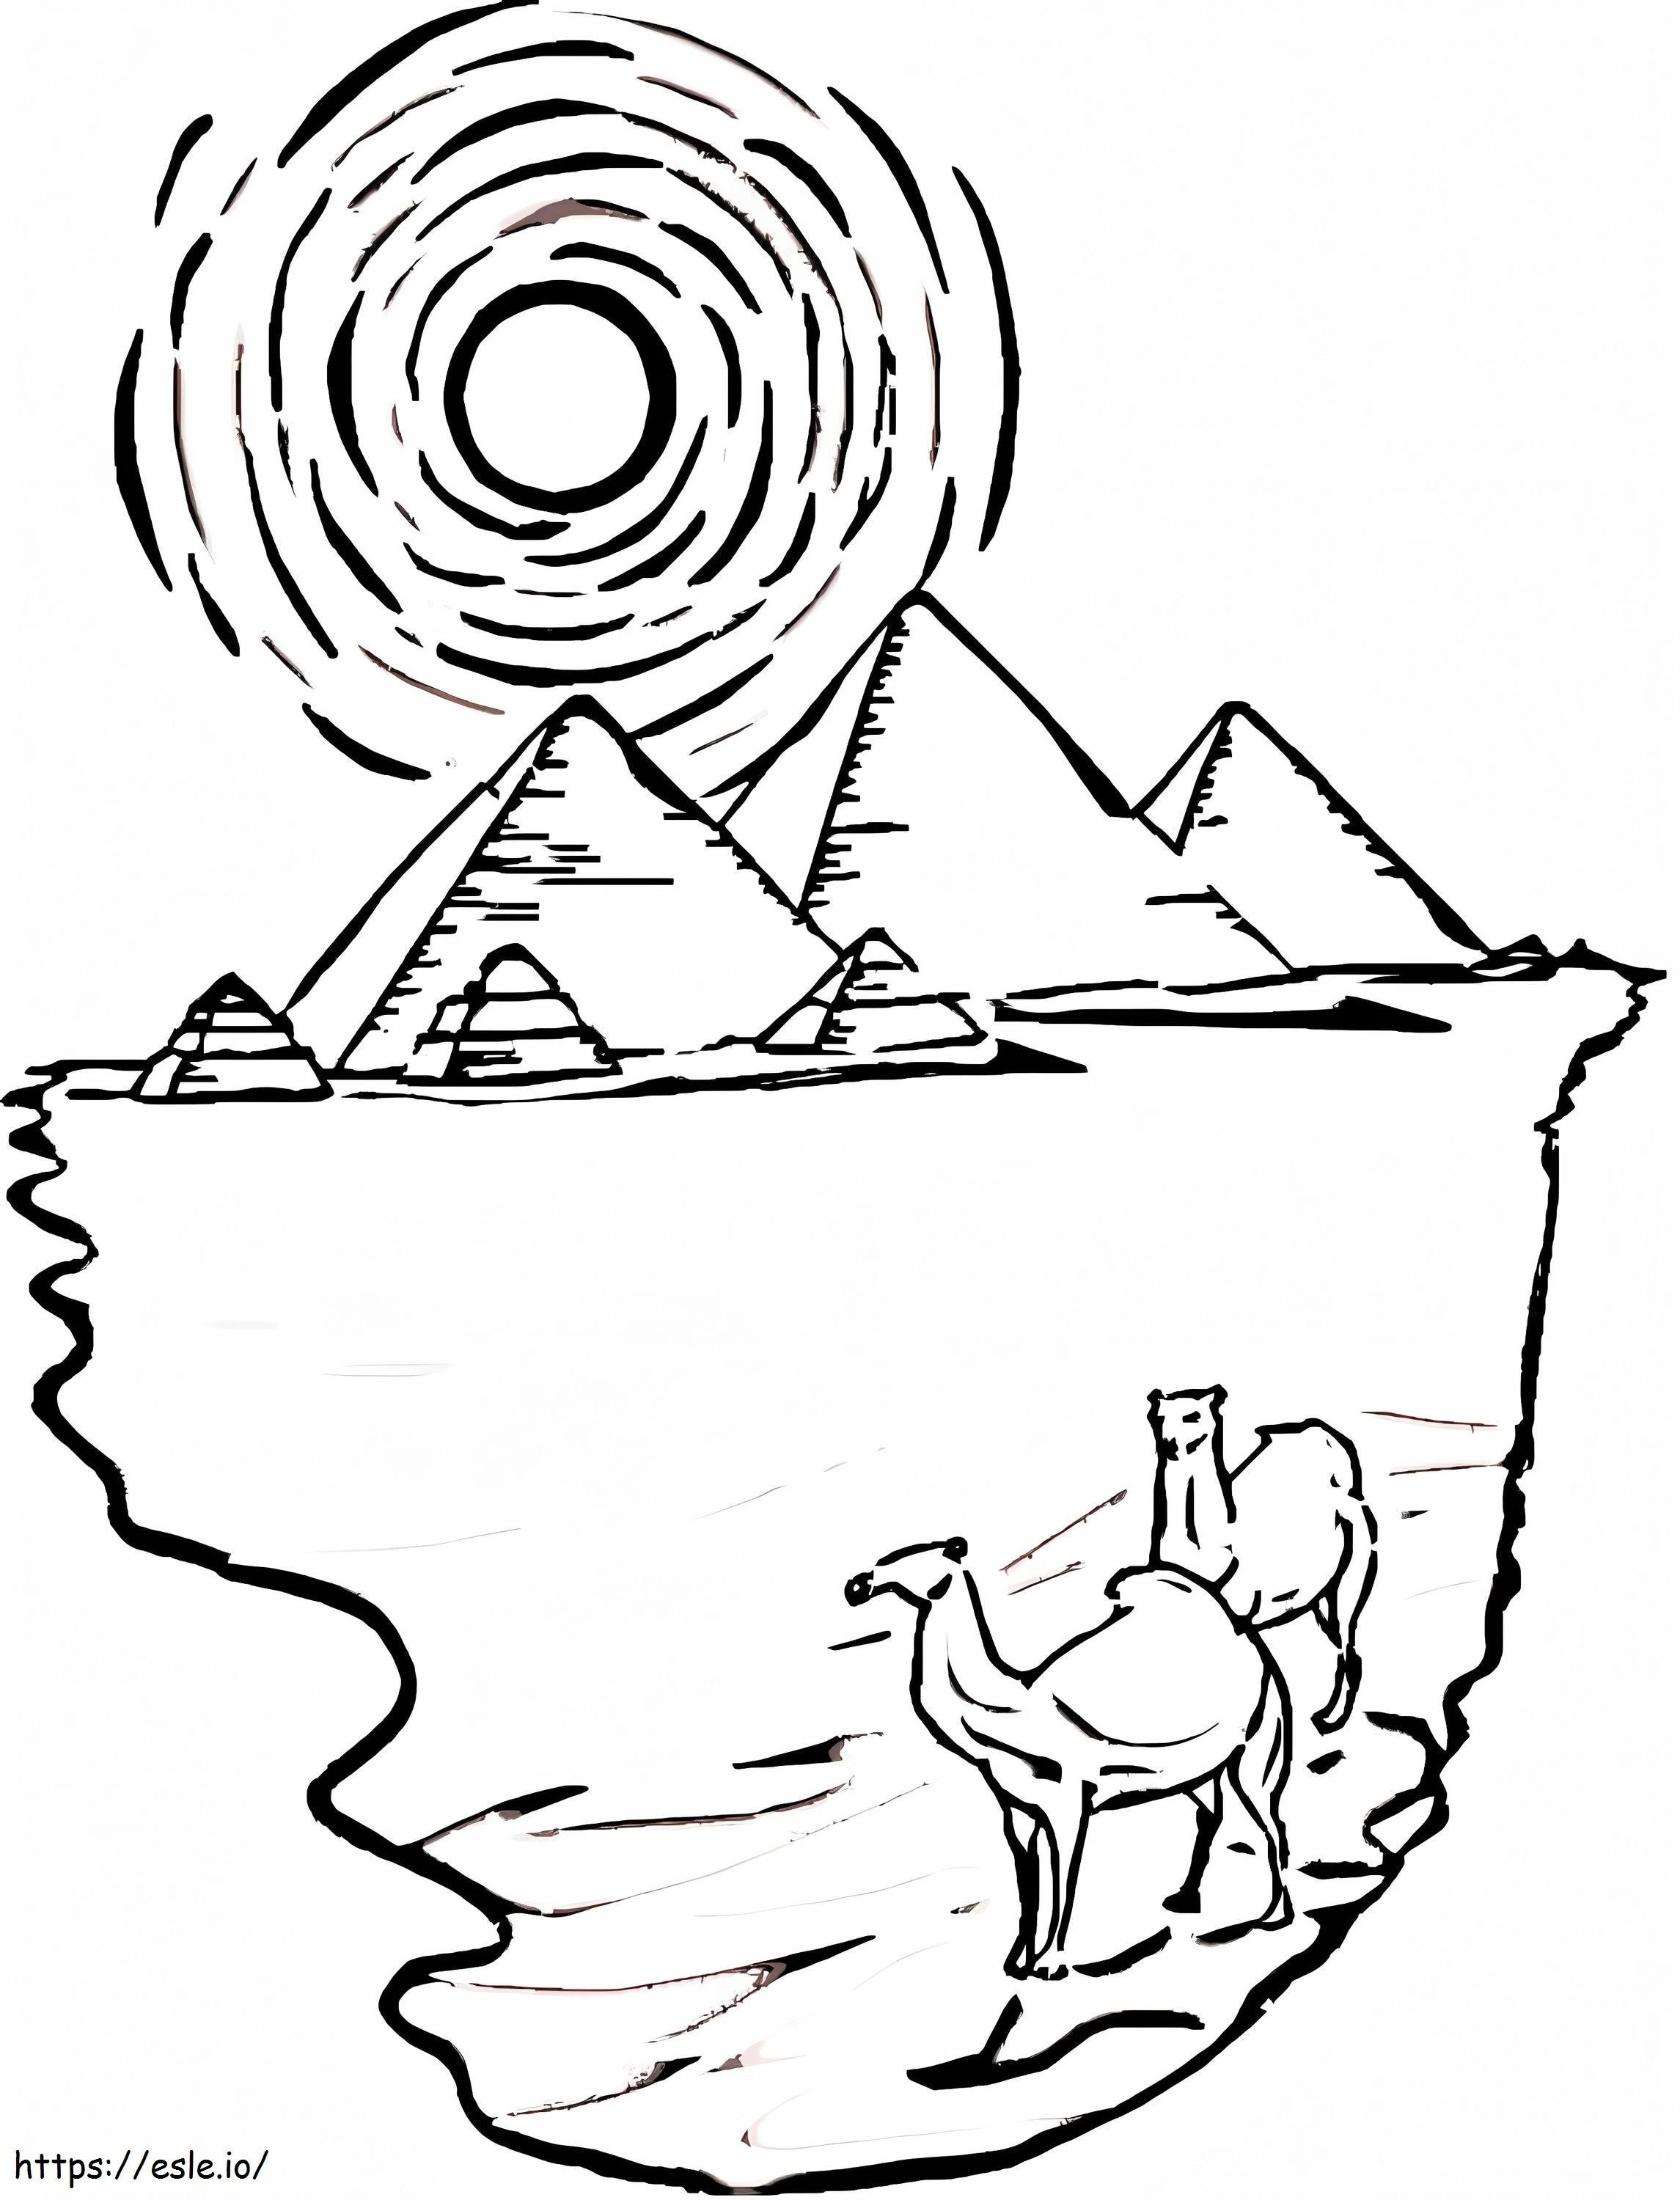 Ägyptische Pyramiden und Kamele ausmalbilder